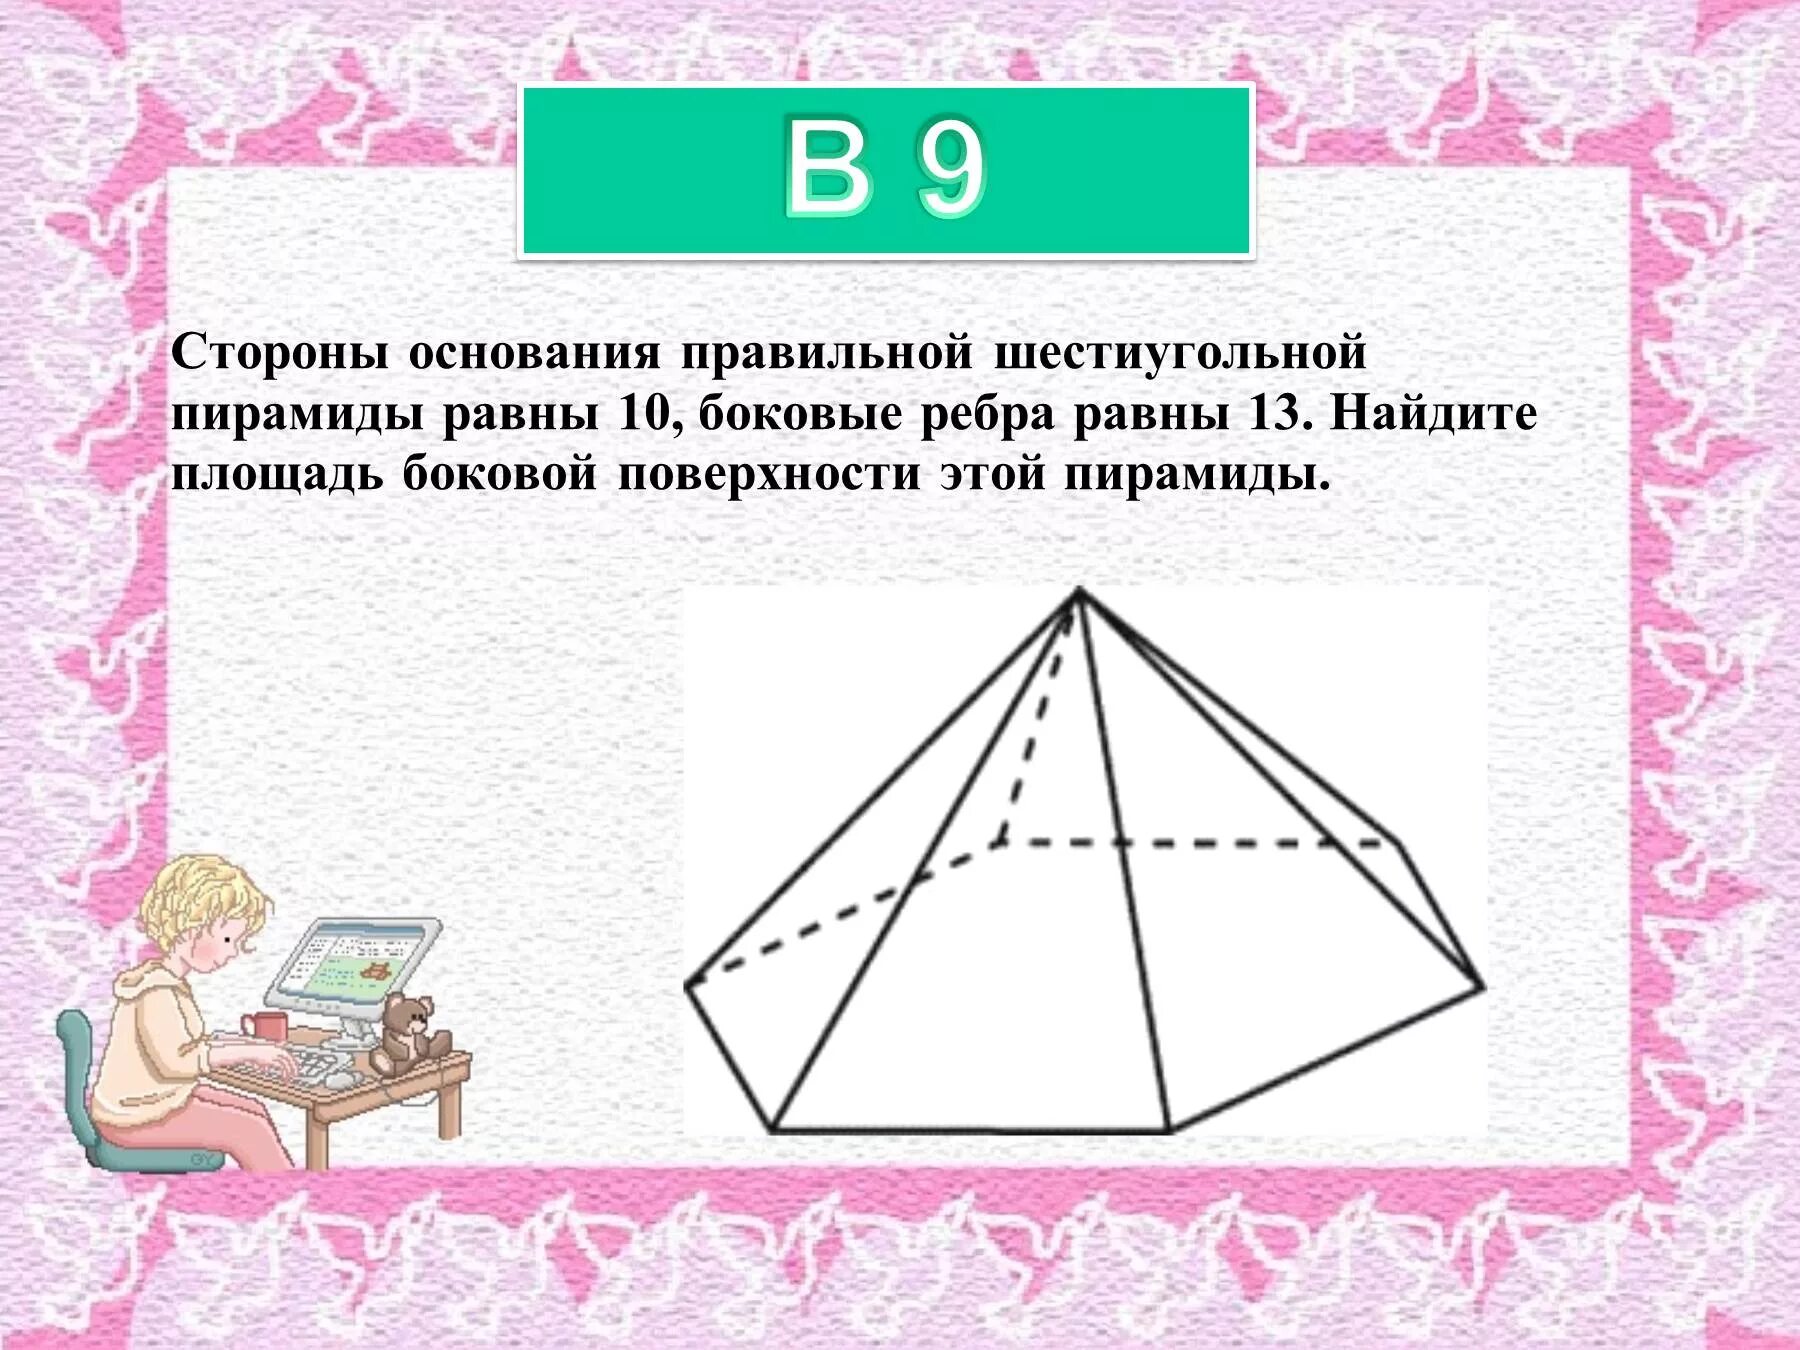 Стороны основания правильной шестиугольной пирамиды 10. Стороны основания правильной 6 угольной пирамиды равны 10 боковые 13. Сторона основания правильной шестиугольной пирамиды. Площадь основания правильной шестиугольной пирамиды. Площадь основания 6 угольной пирамиды